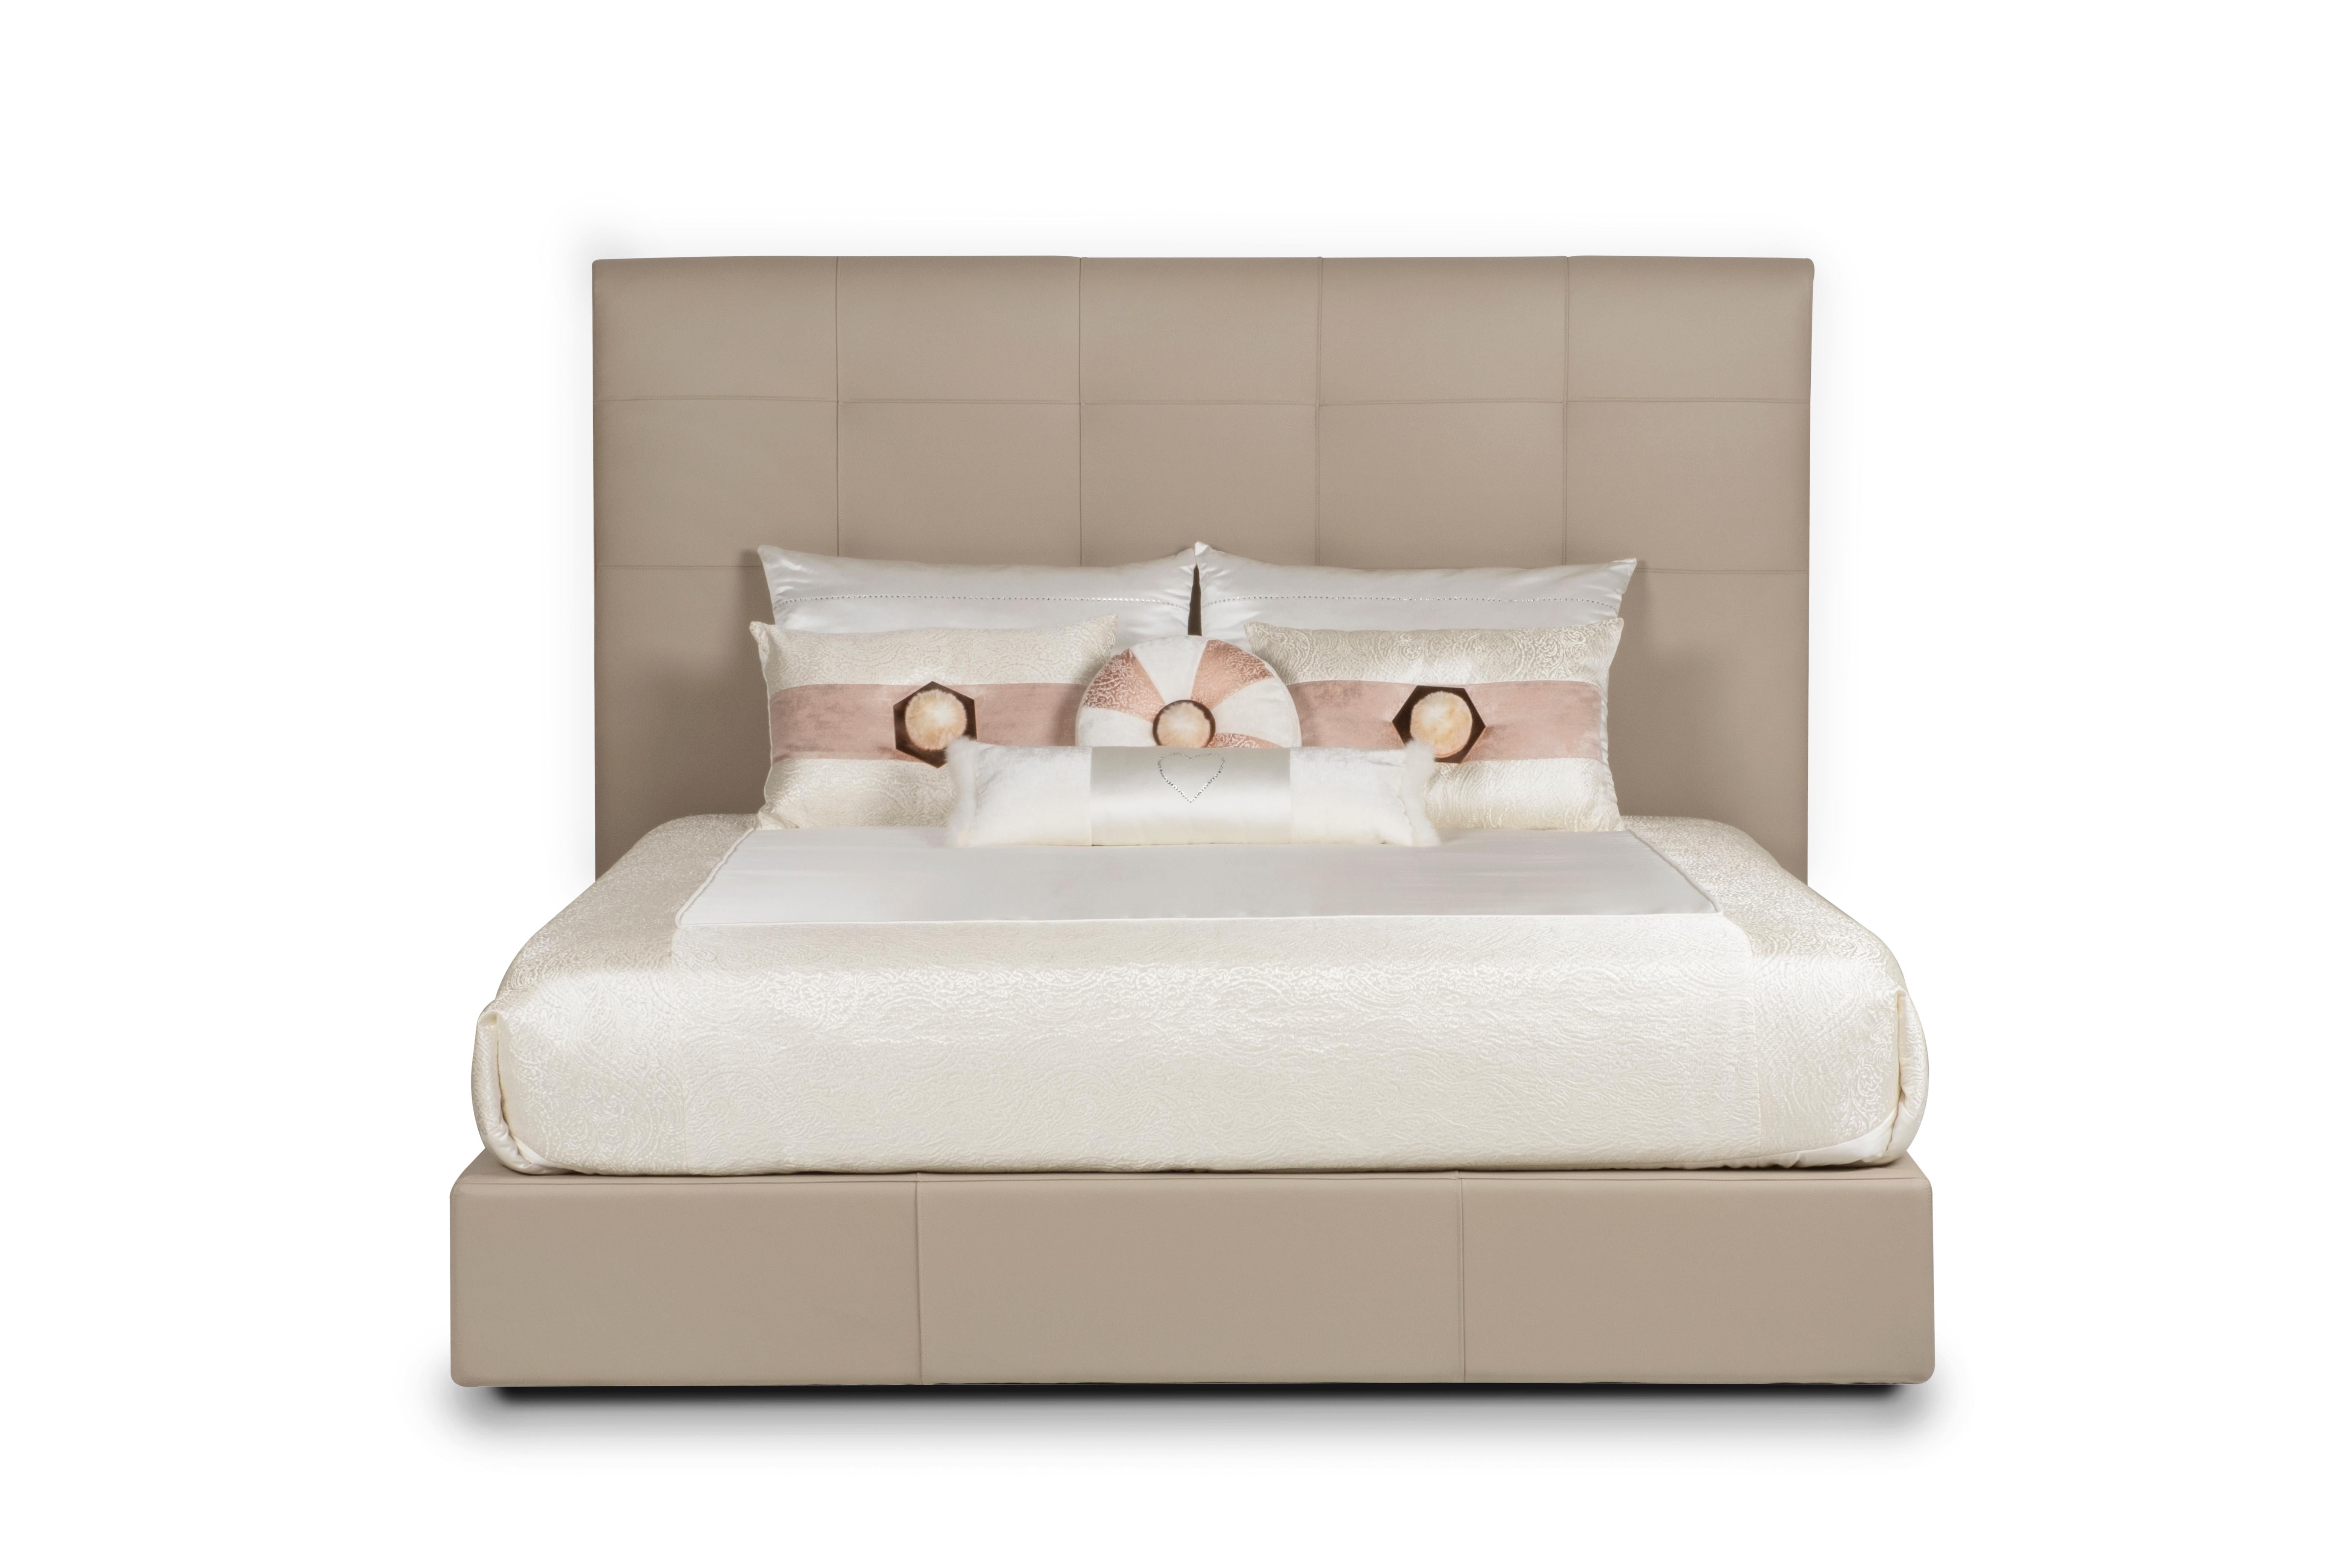 Cama Midnight, Colección Modern, Fabricada a mano en Portugal - Europa por GF Modern.

Medianoche es una elegante cama tapizada en piel italiana beige de alta calidad. Se diseñó para combinar el confort moderno con detalles elegantes. El marco de